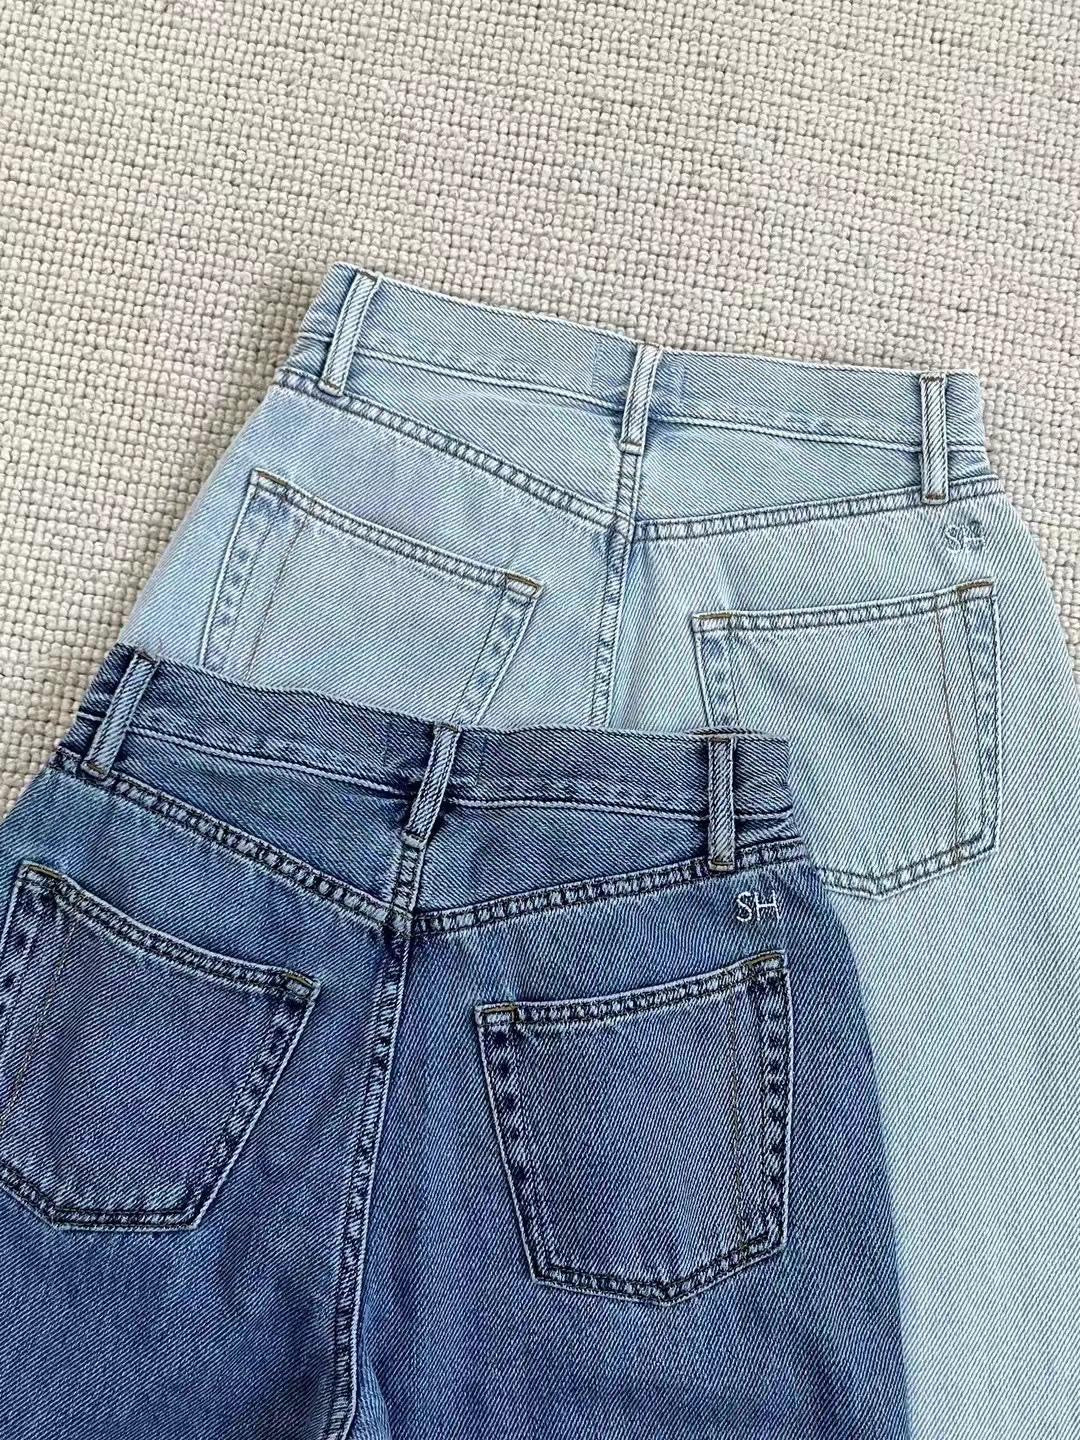 SH Childhood Cloud Cotton Denim Jeans